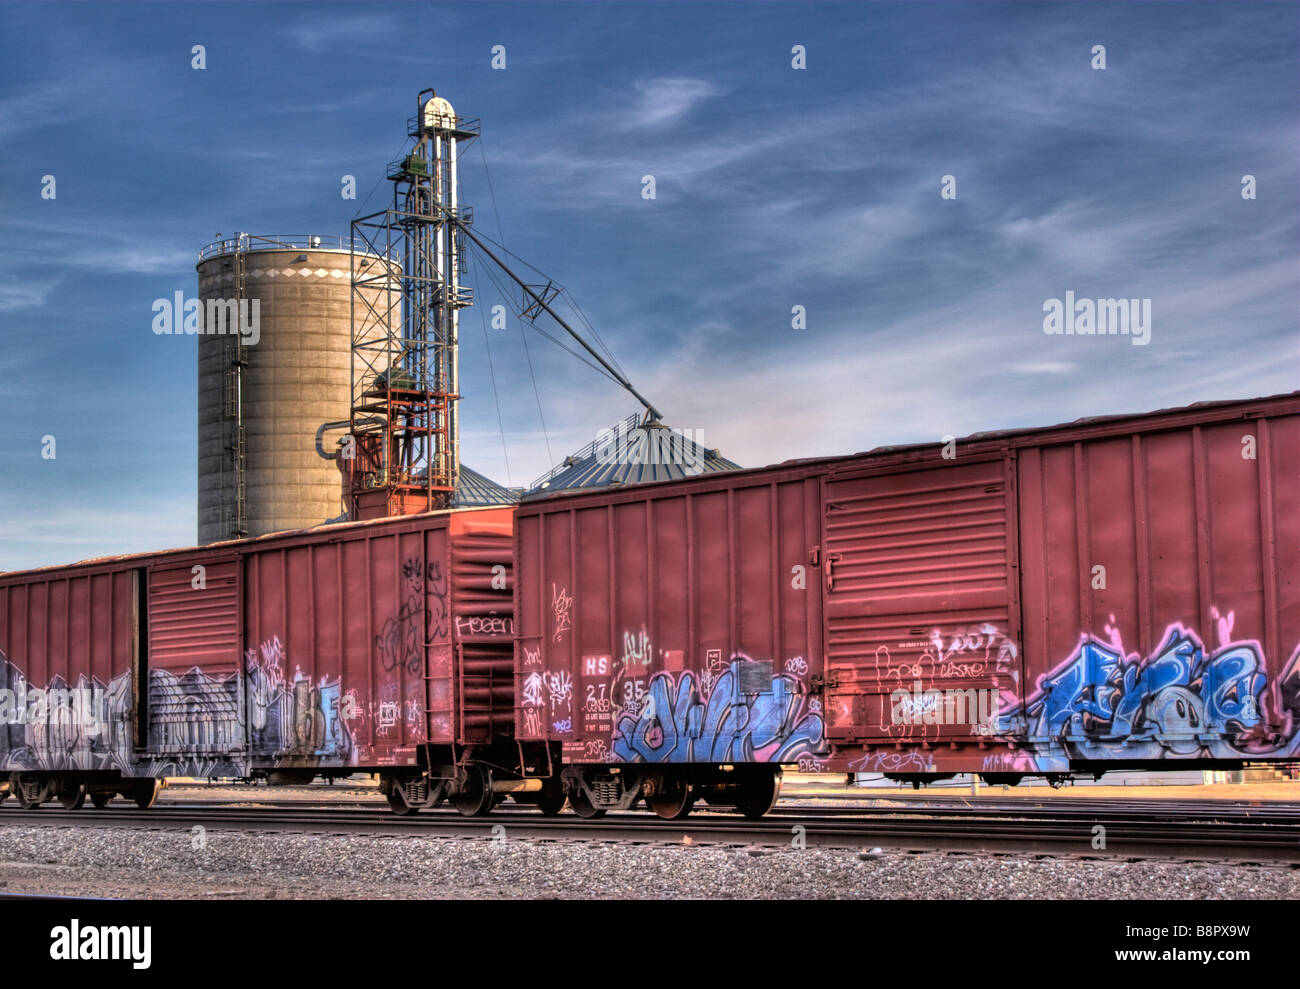 Immagine hdr di colorati graffiti coperto treno merci le automobili con un elevatore della granella Foto Stock